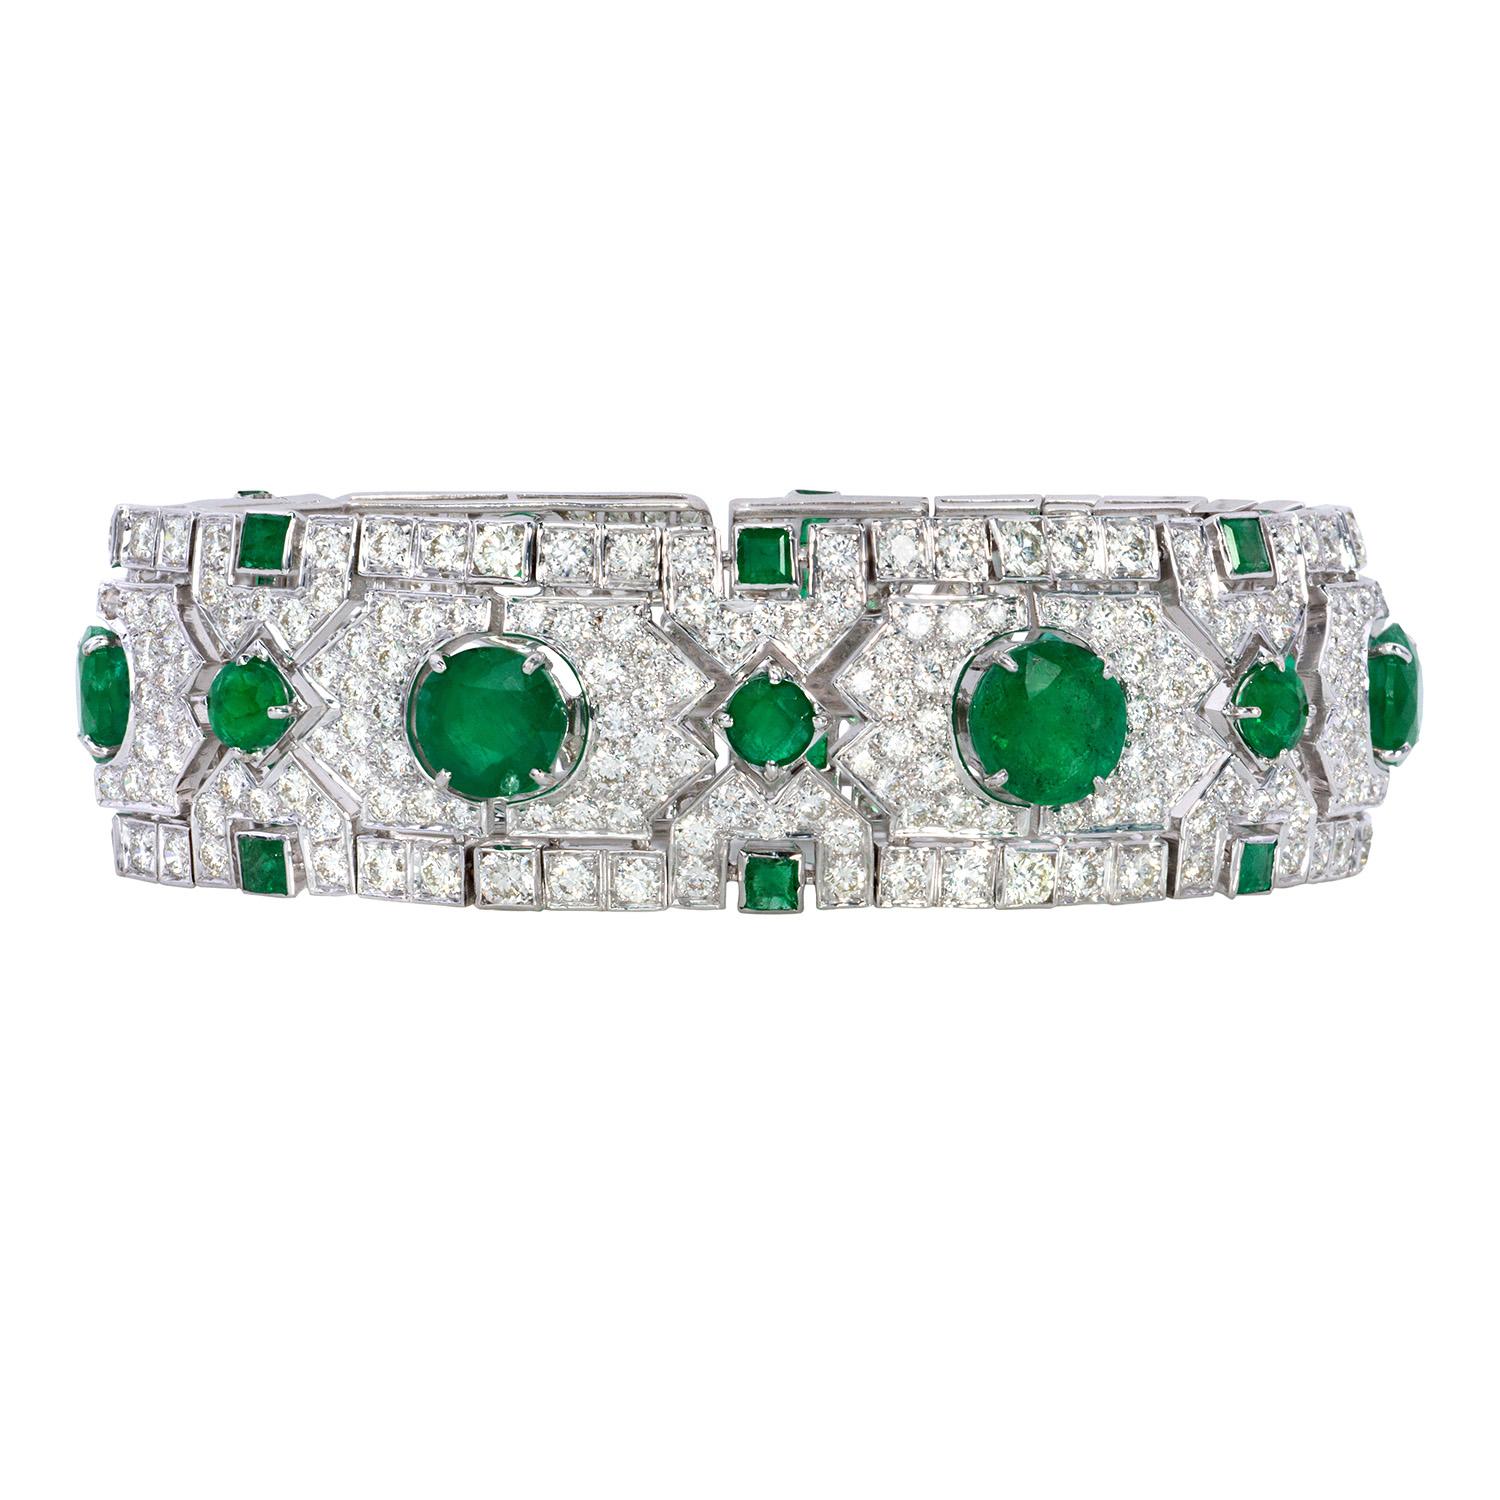 Emerald Cut 13.92 Carat Emerald and Diamond Art Deco Style Bracelet 